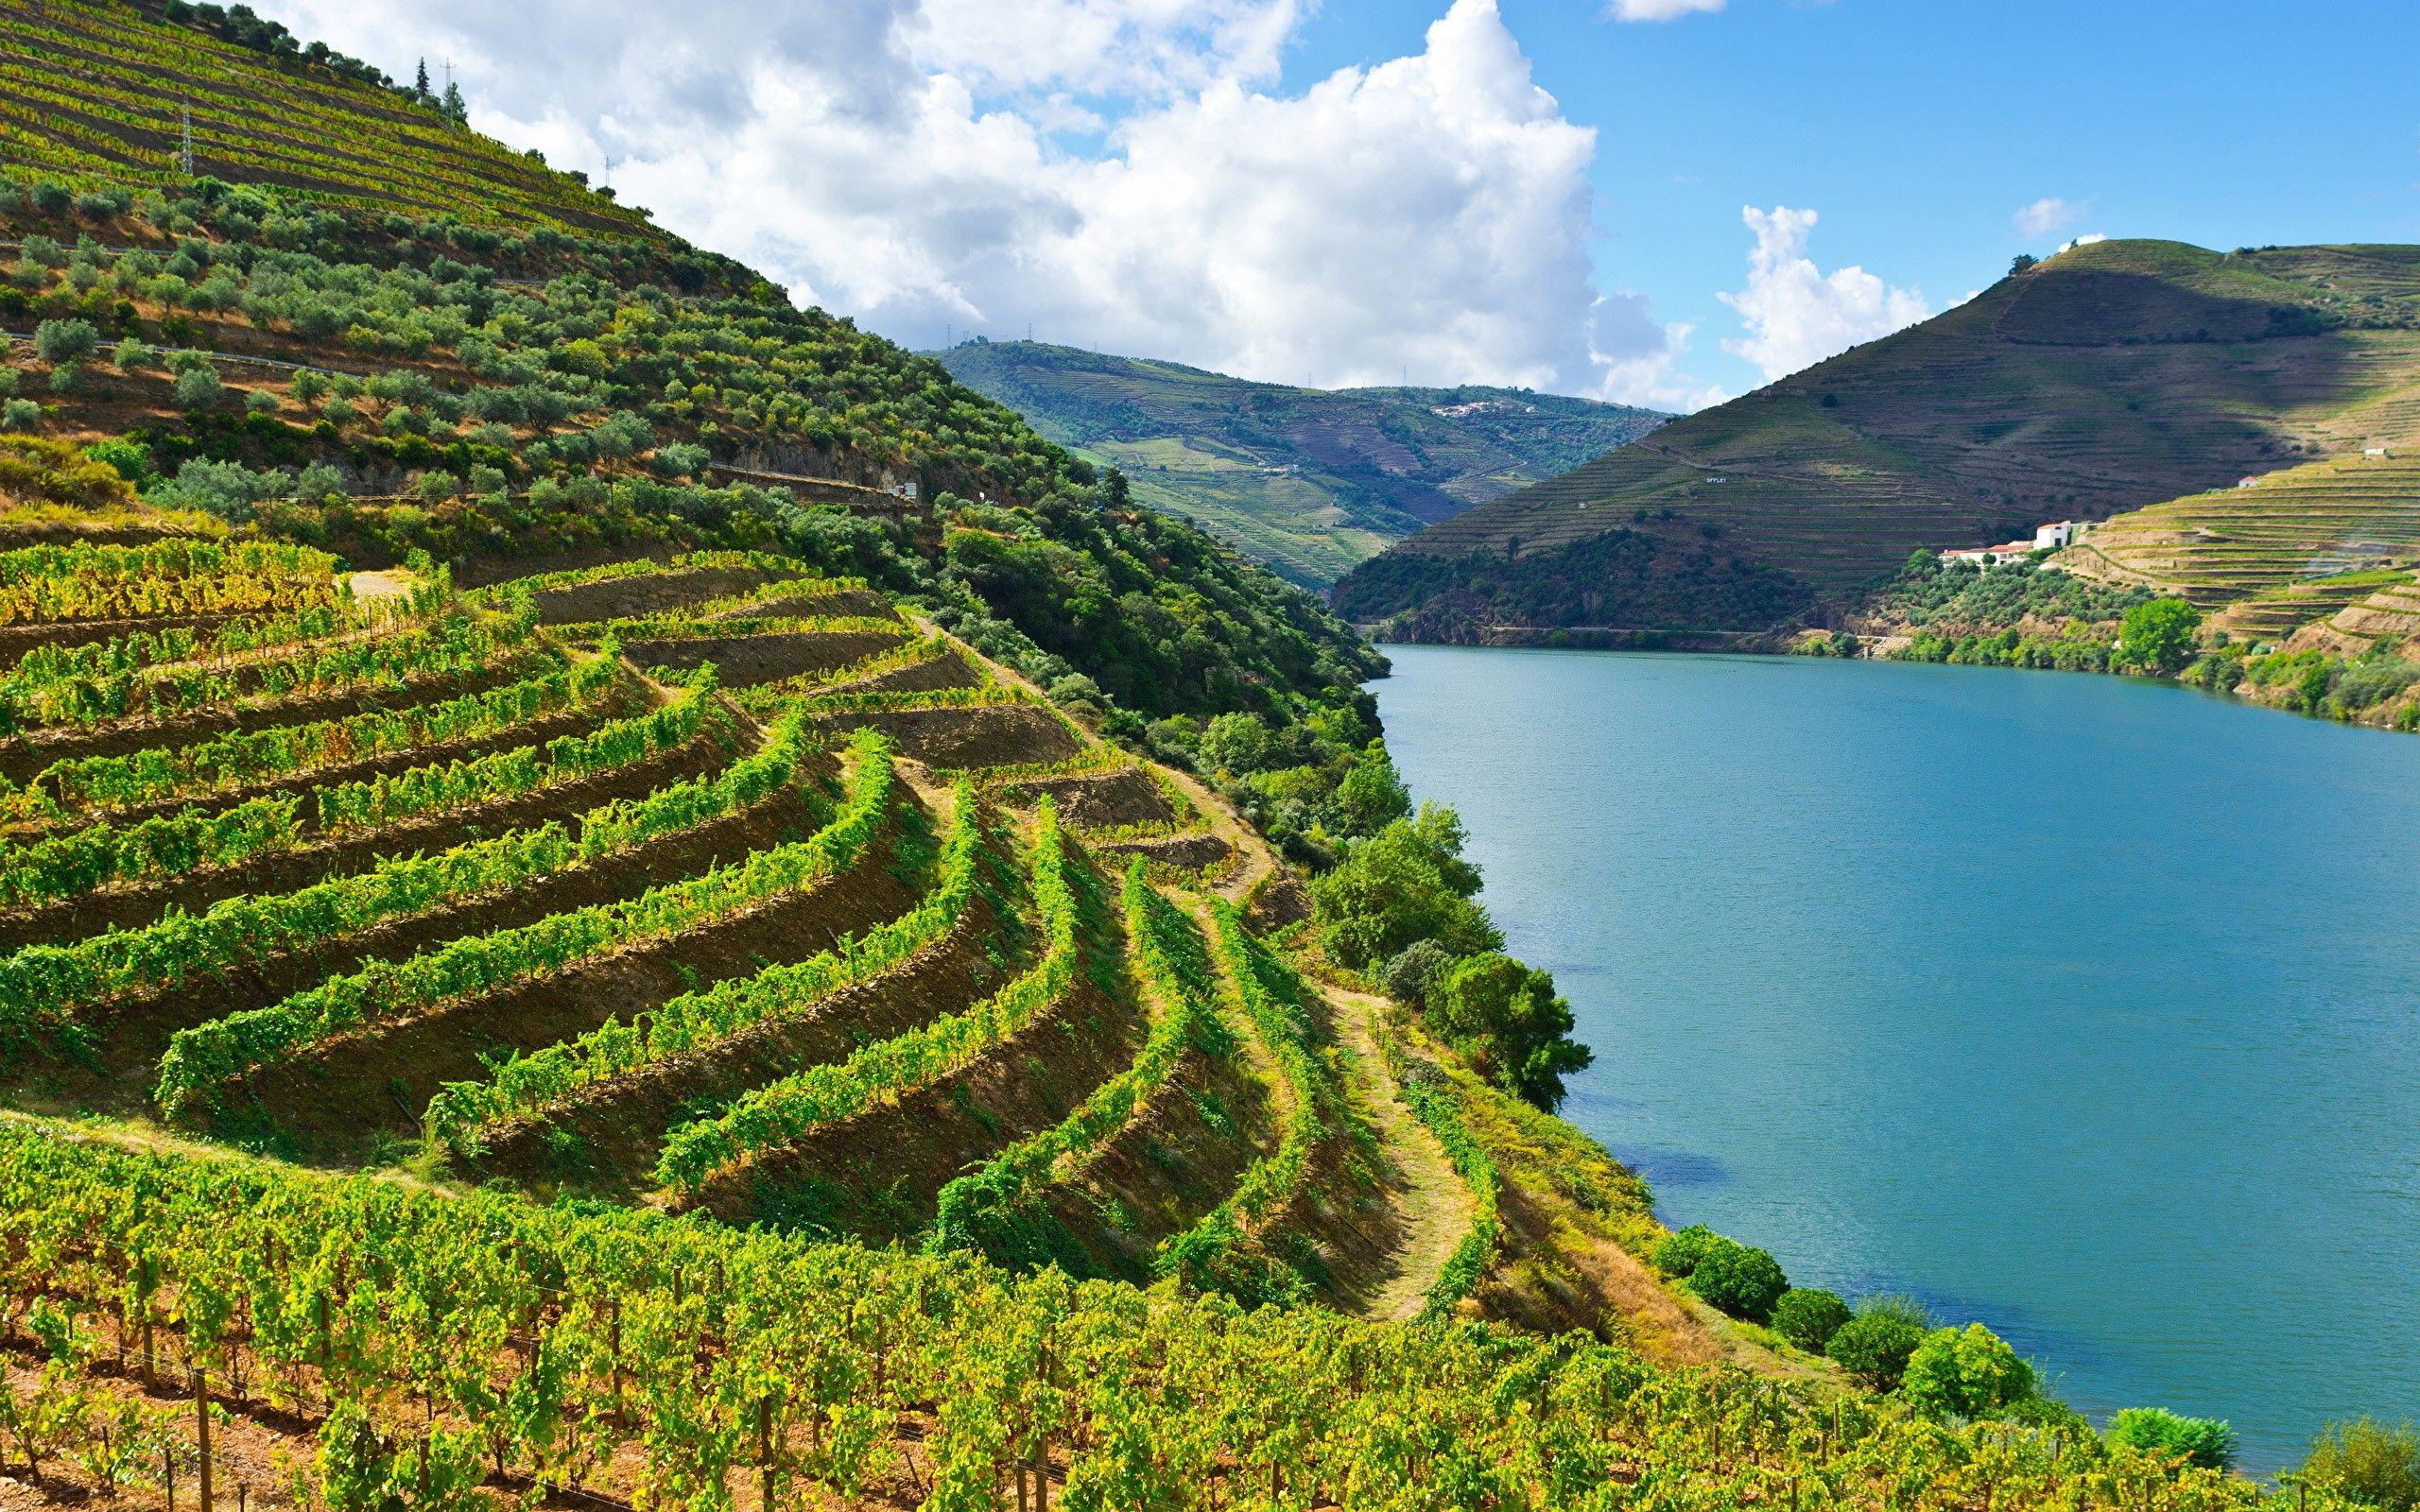 Hình nền 2560x1600 Cảnh thiên nhiên tuyệt đẹp của Sông Douro ở Bồ Đào Nha.  HD